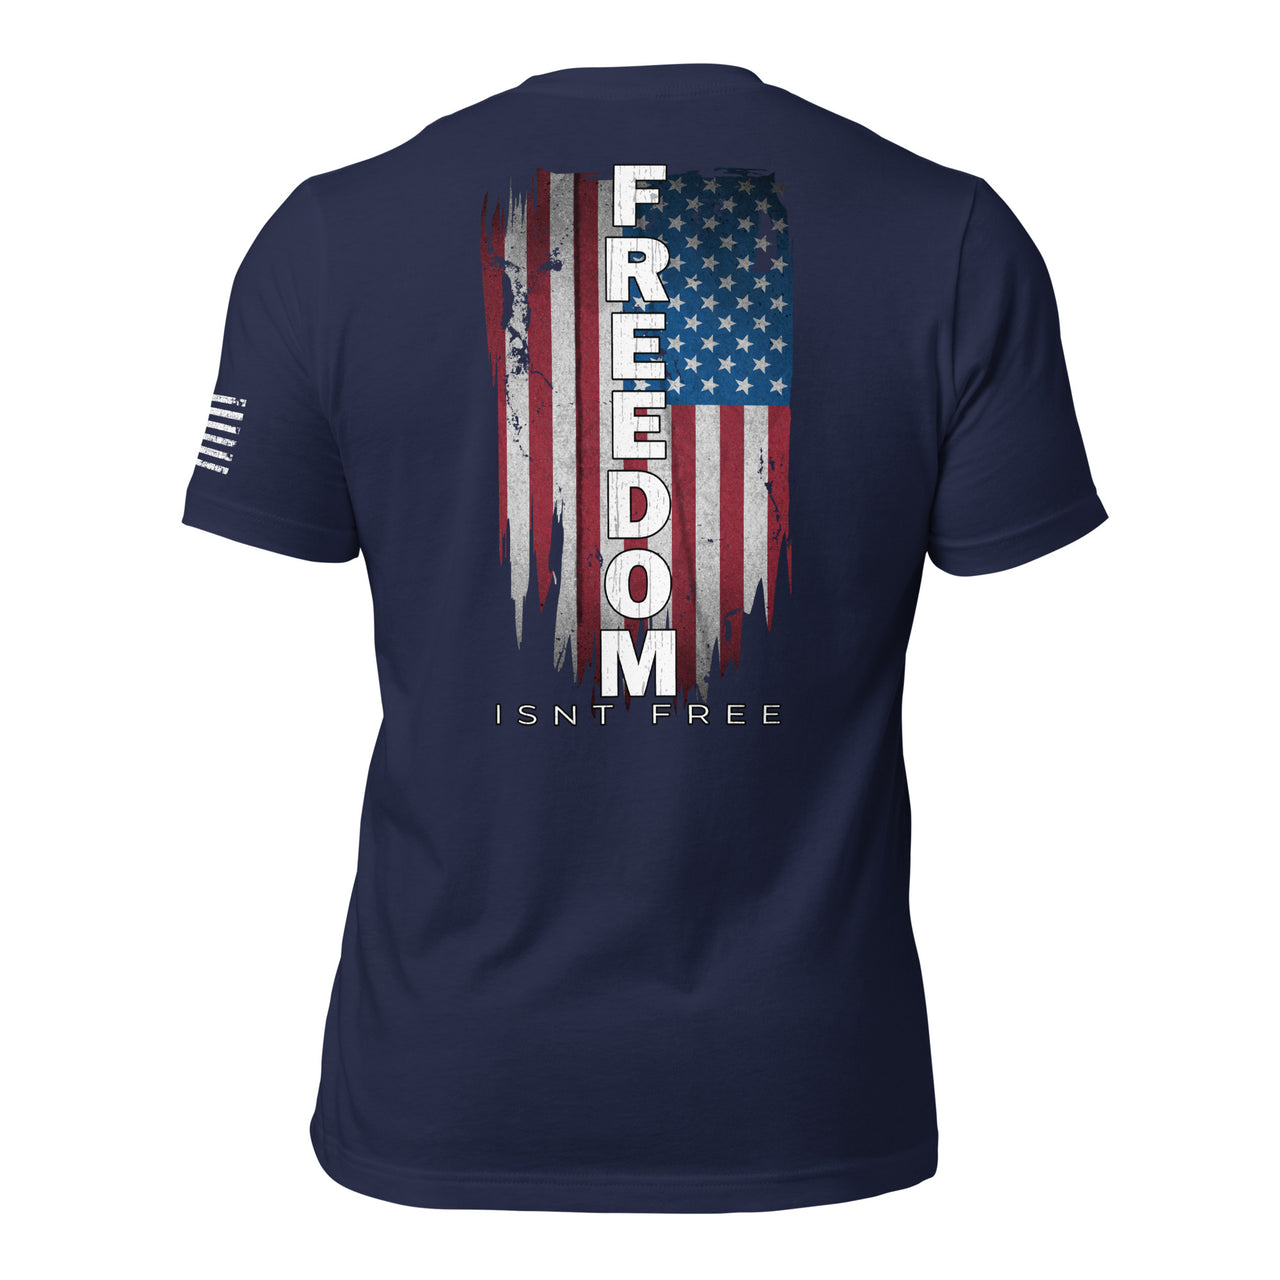 Freedom Isnt Free T-Shirt - Patriotic American Flag Shirt